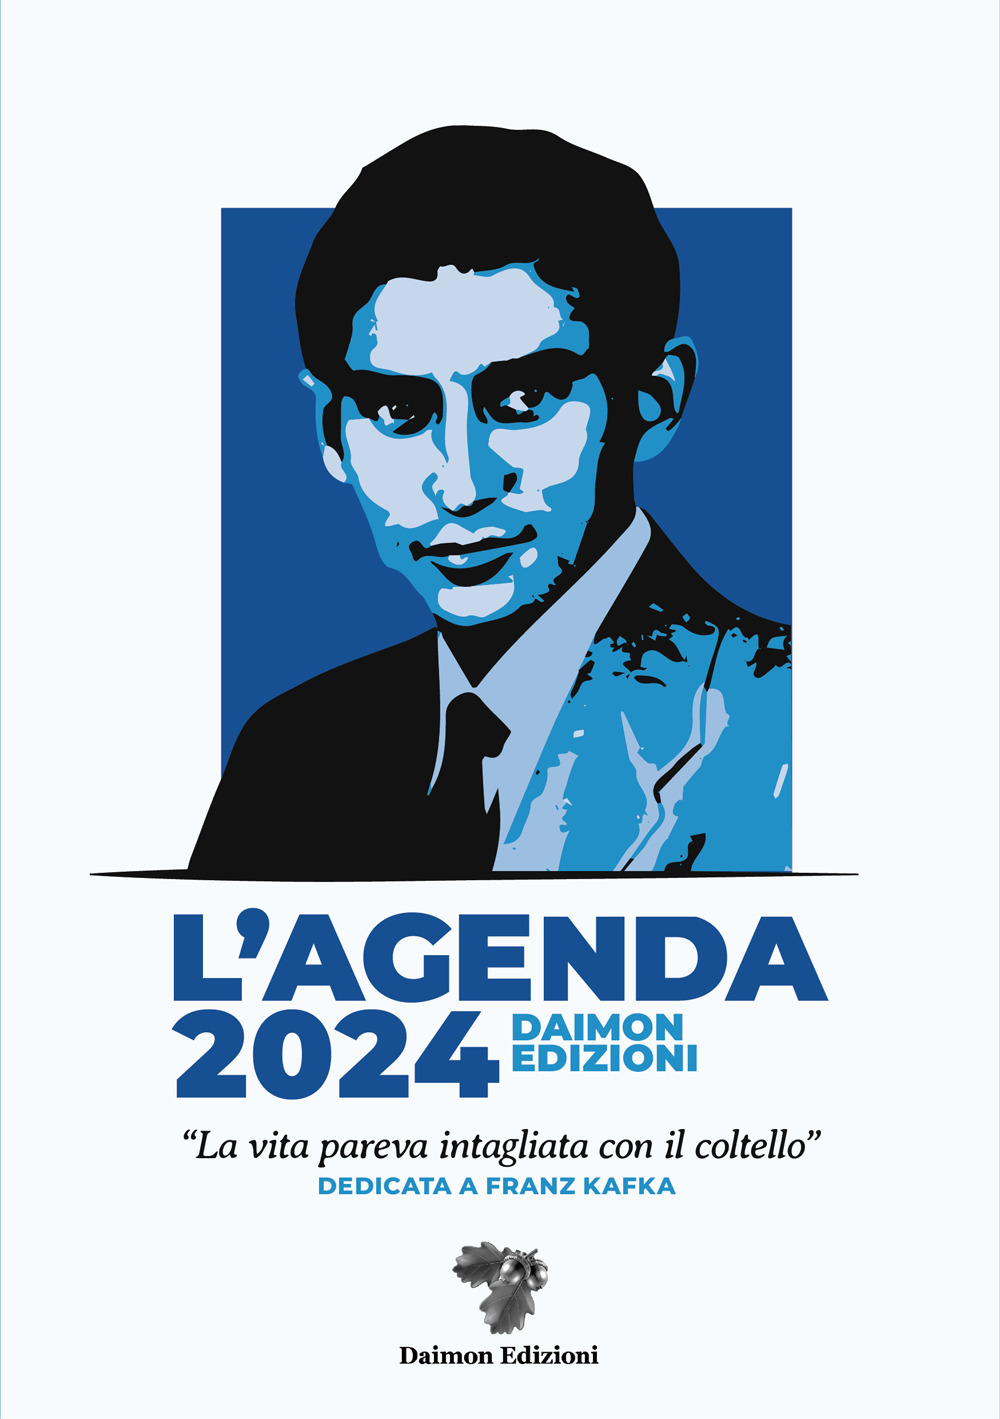 L'Agenda 2024 Daimon Edizioni «La vita pareva intagliata con il coltello». Dedicata a Franz Kafka